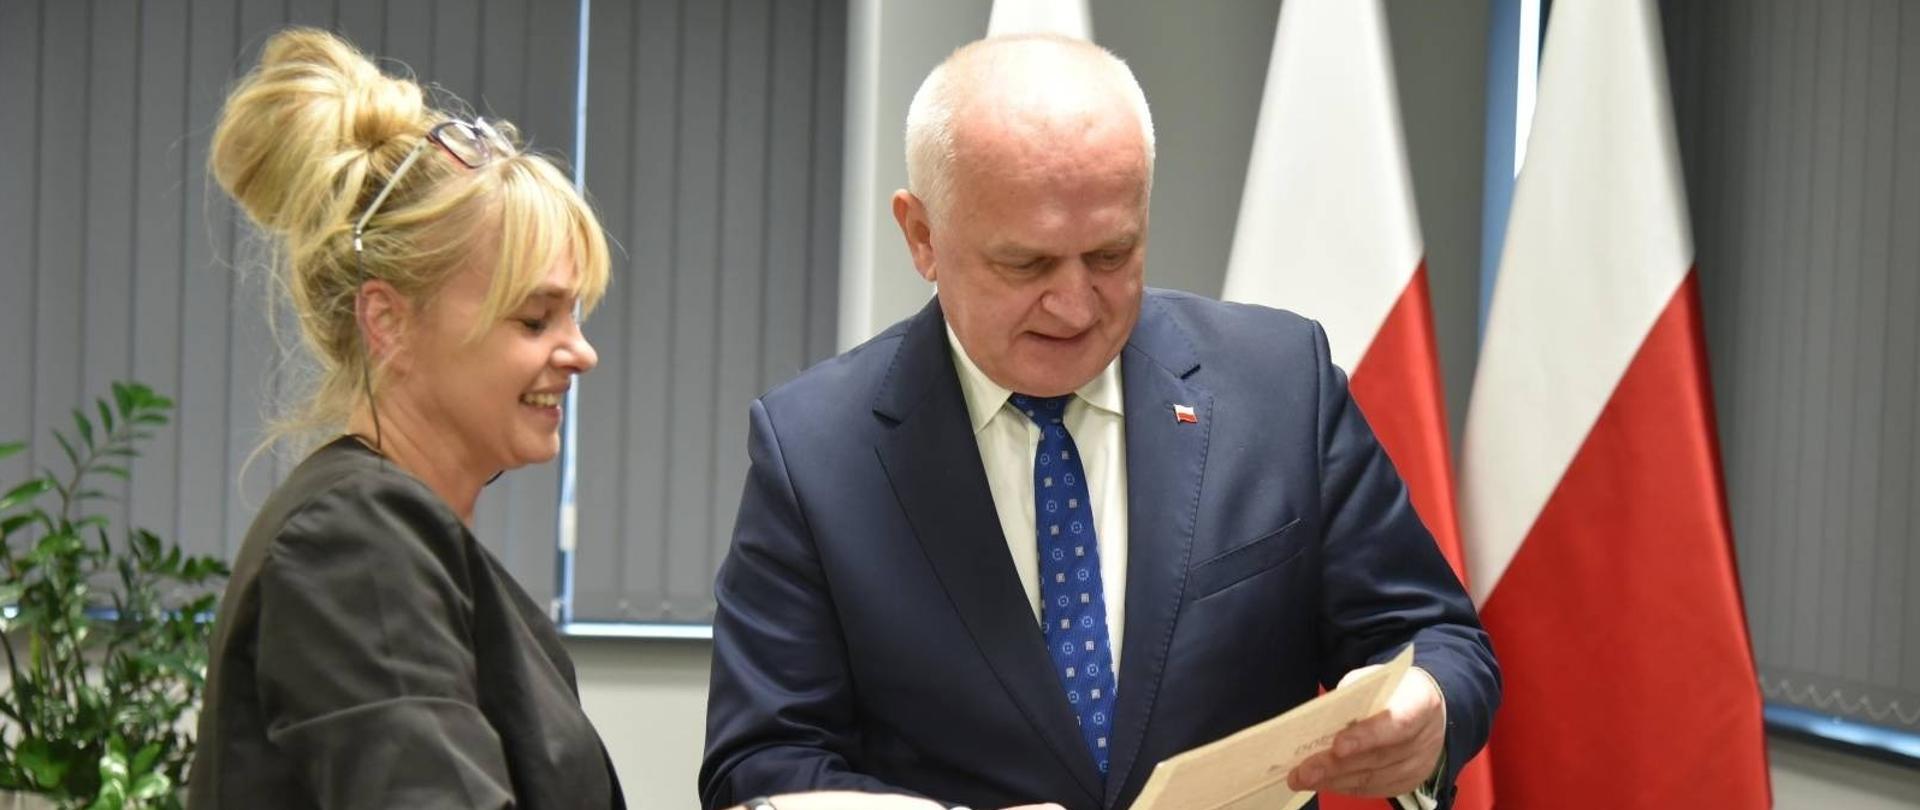 Wojewoda Lubuski losuje laureatów krzyżówki niepodległościowej wraz z pracownikiem Biura Wojewody. 